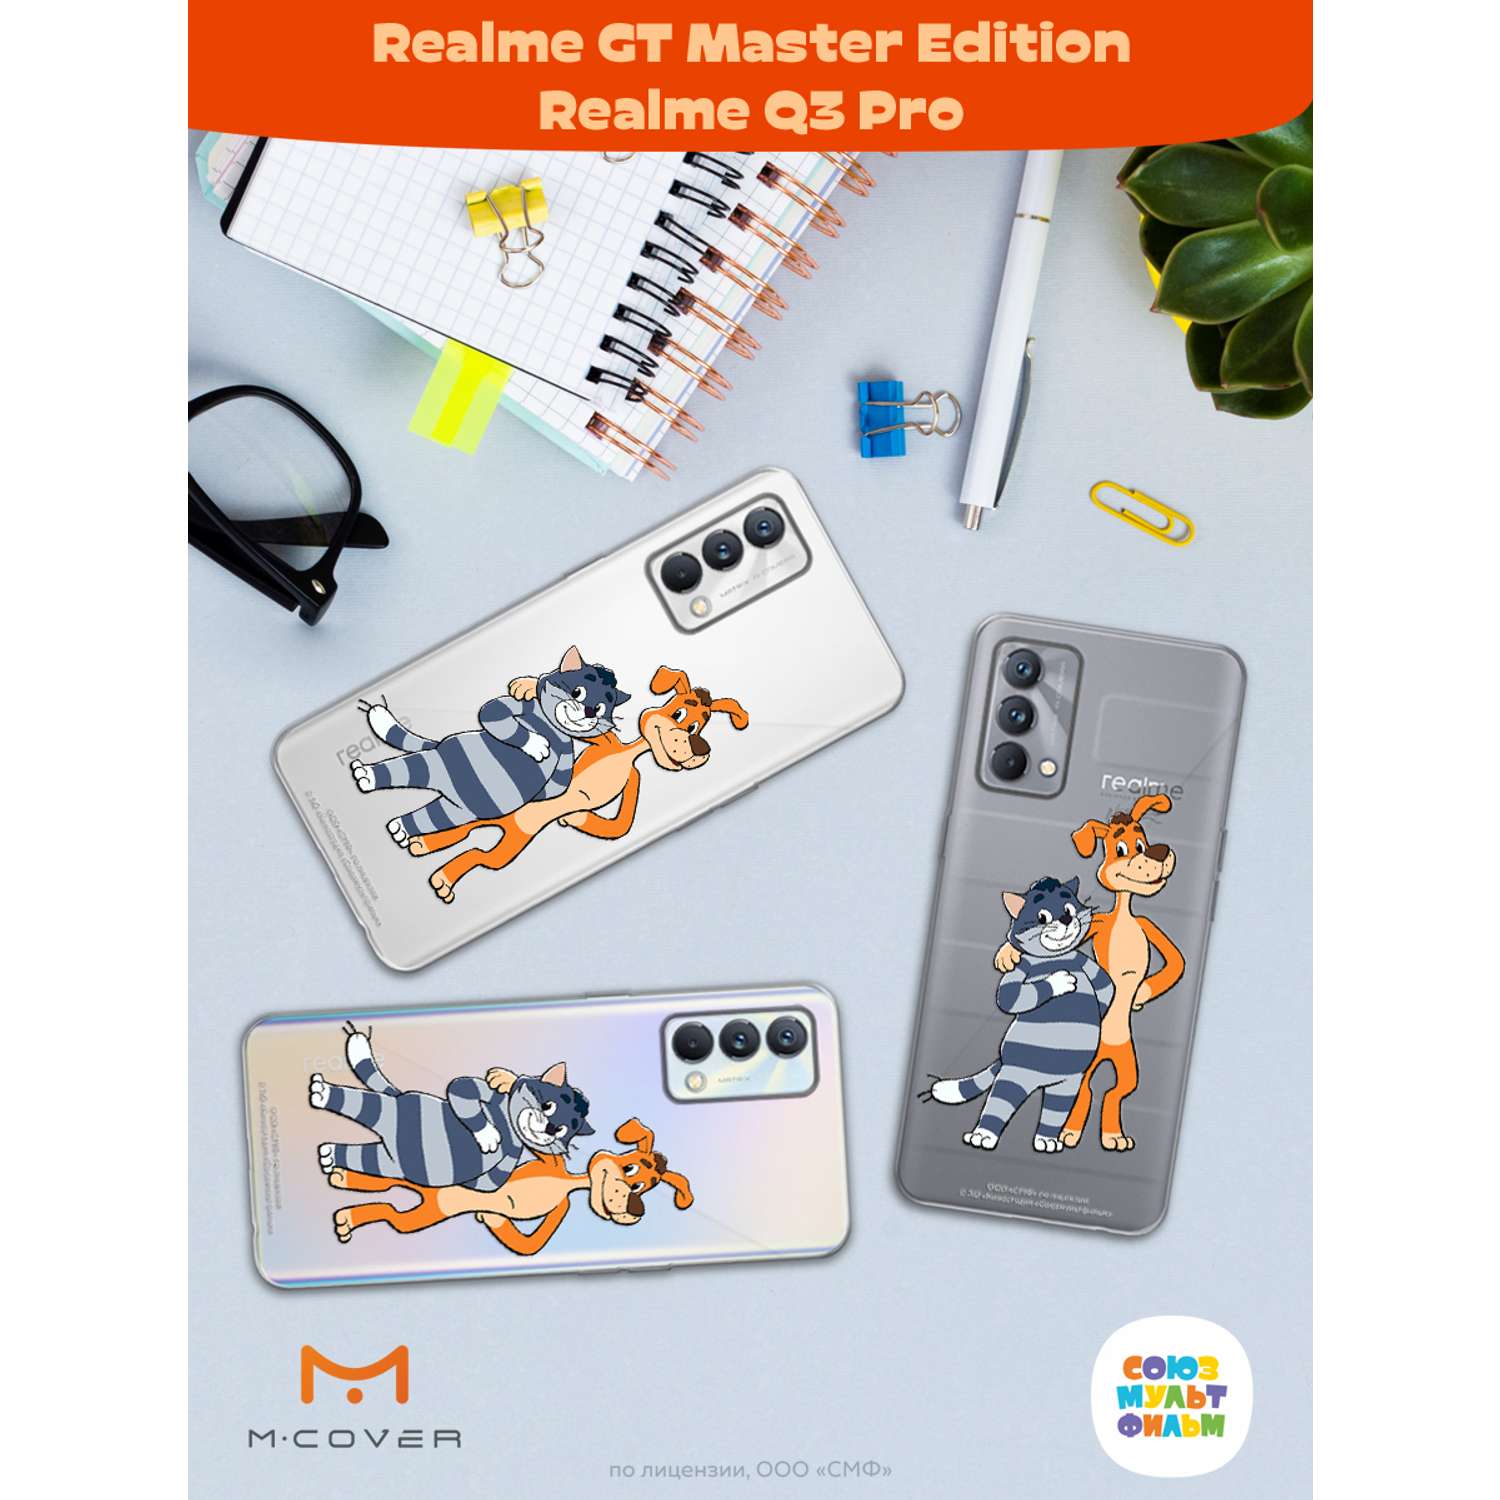 Силиконовый чехол Mcover для смартфона Realme GT Master Edition Q3 Pro Союзмультфильм Шарик и Матроскин - фото 3